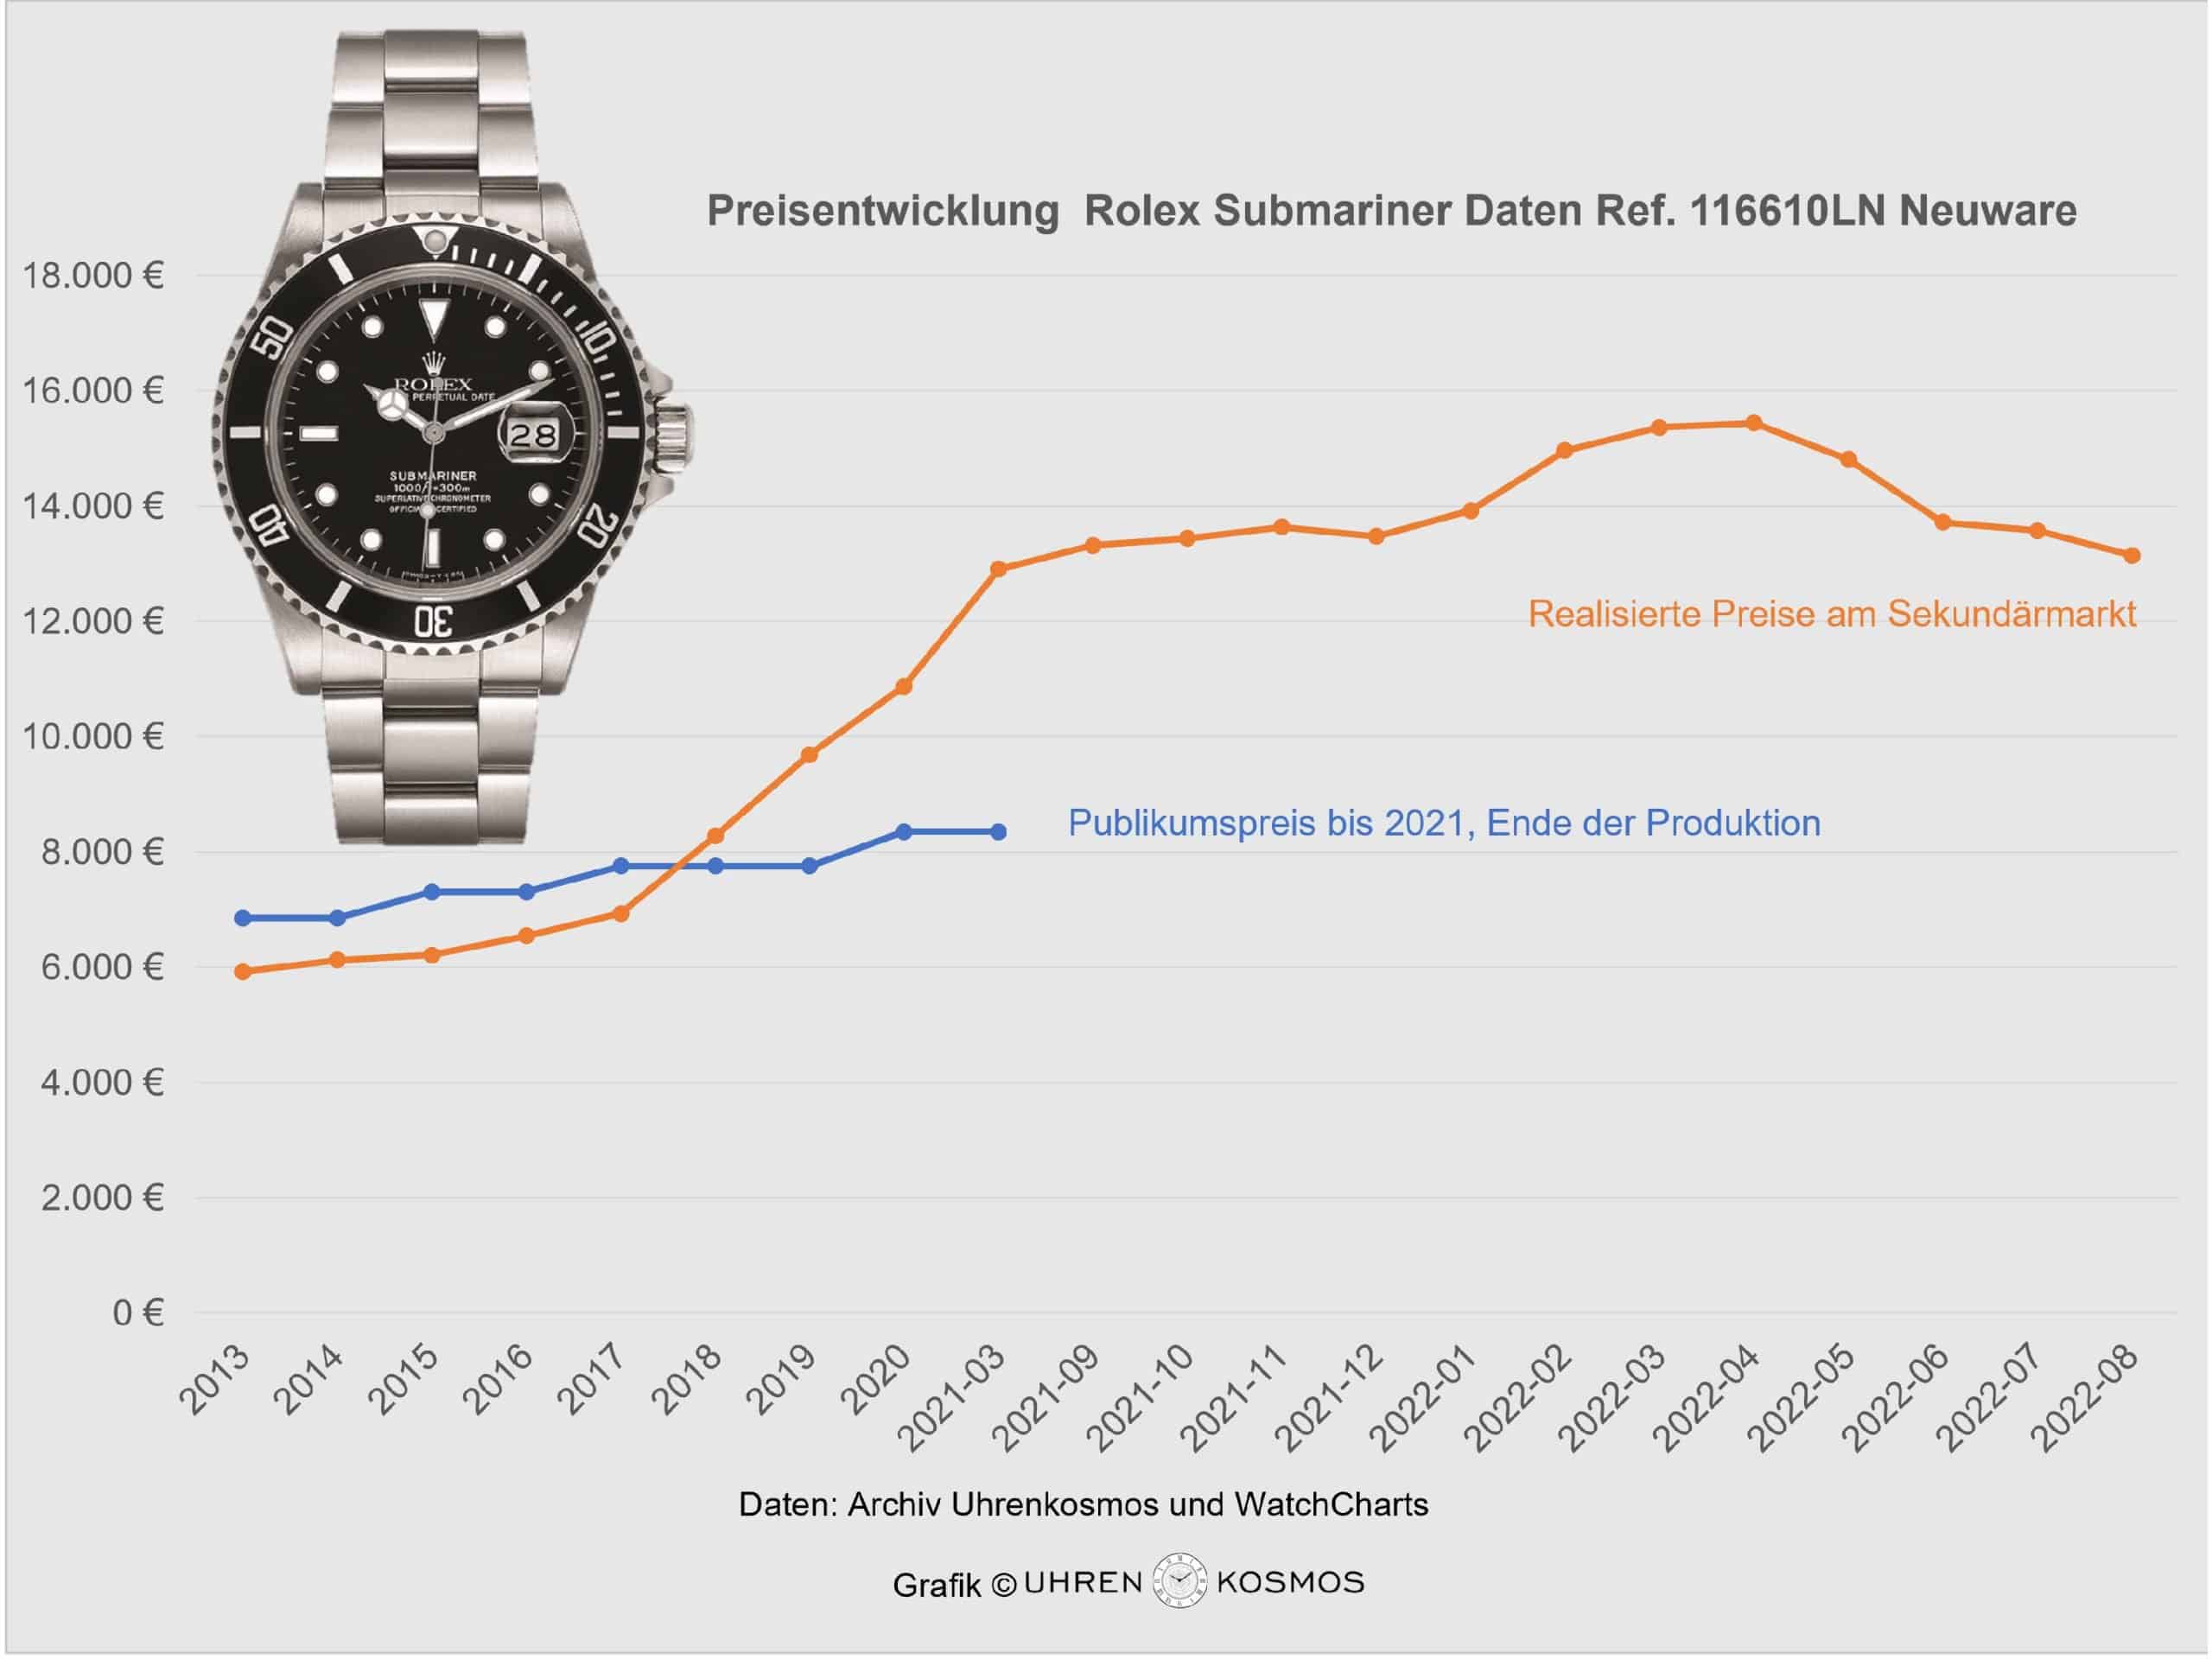 Preisentwicklung Rolex Submariner